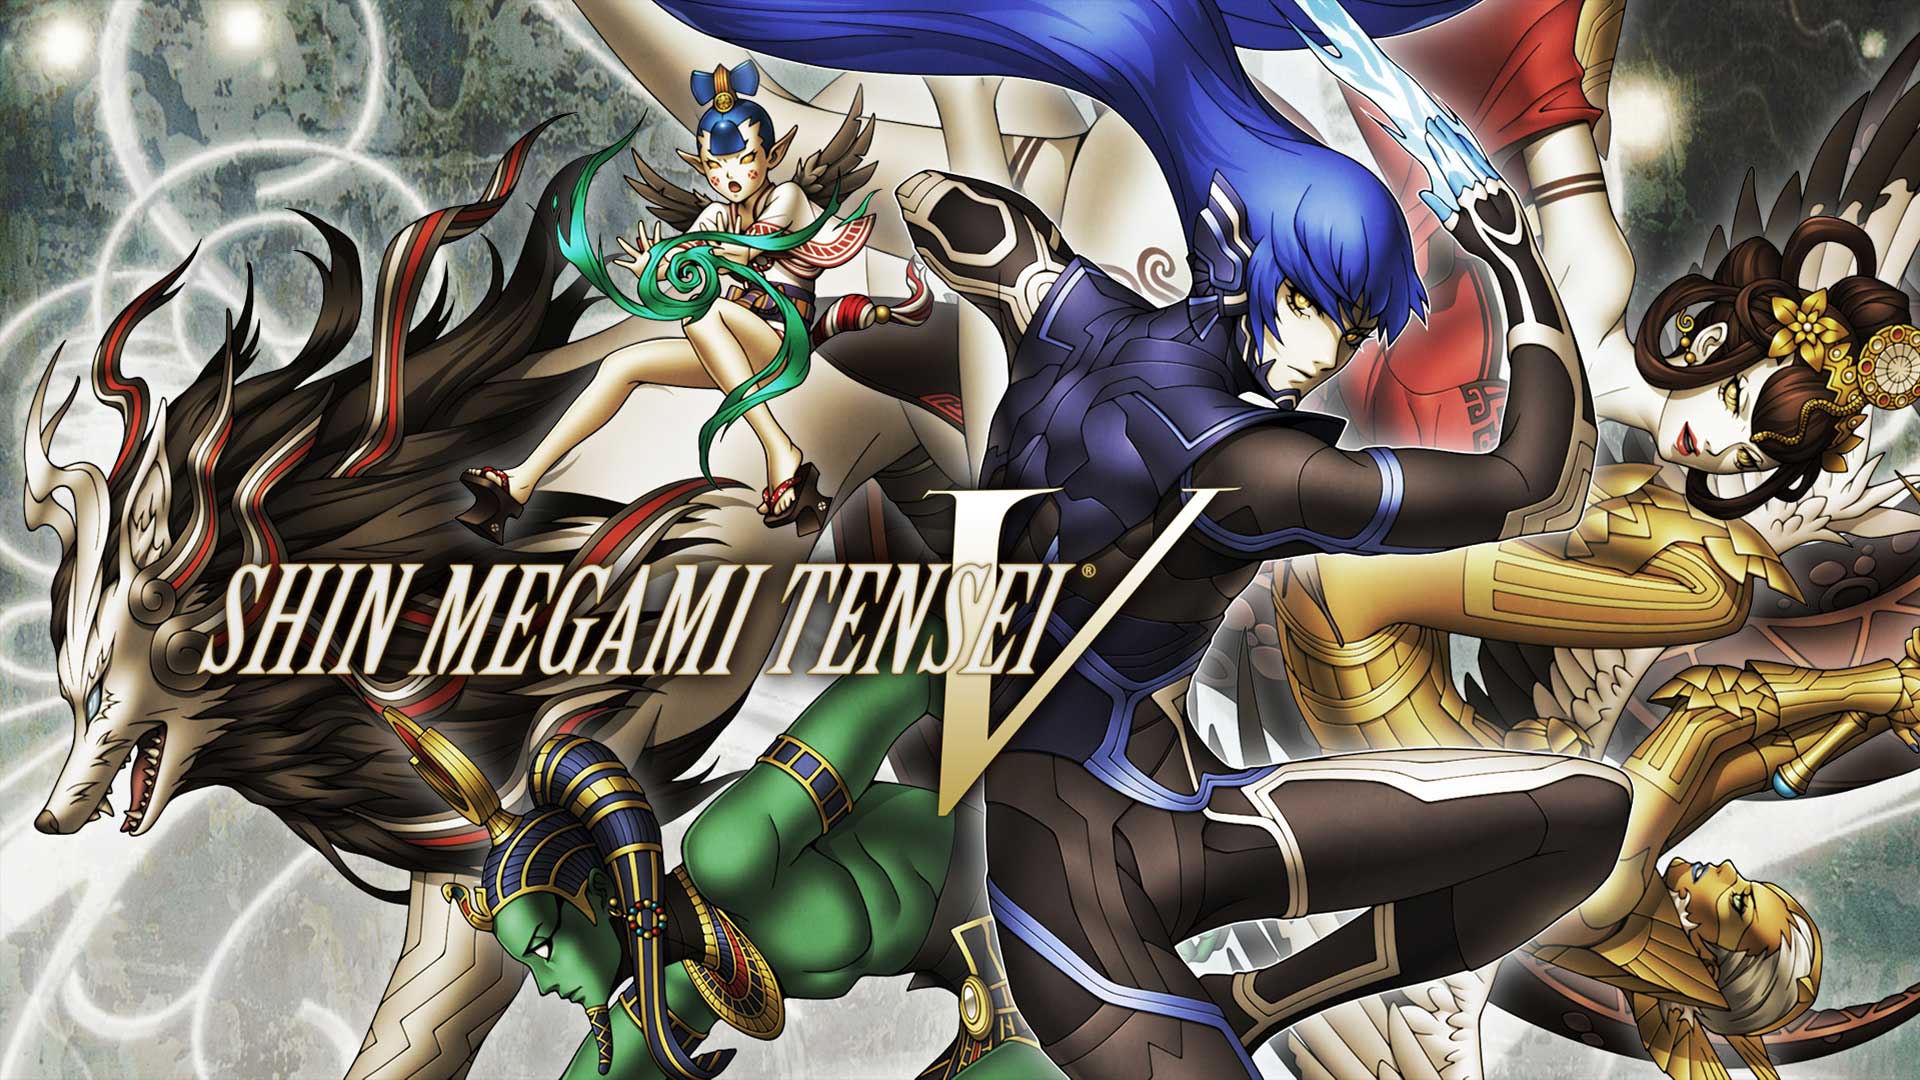 shin megami tensei 5 release